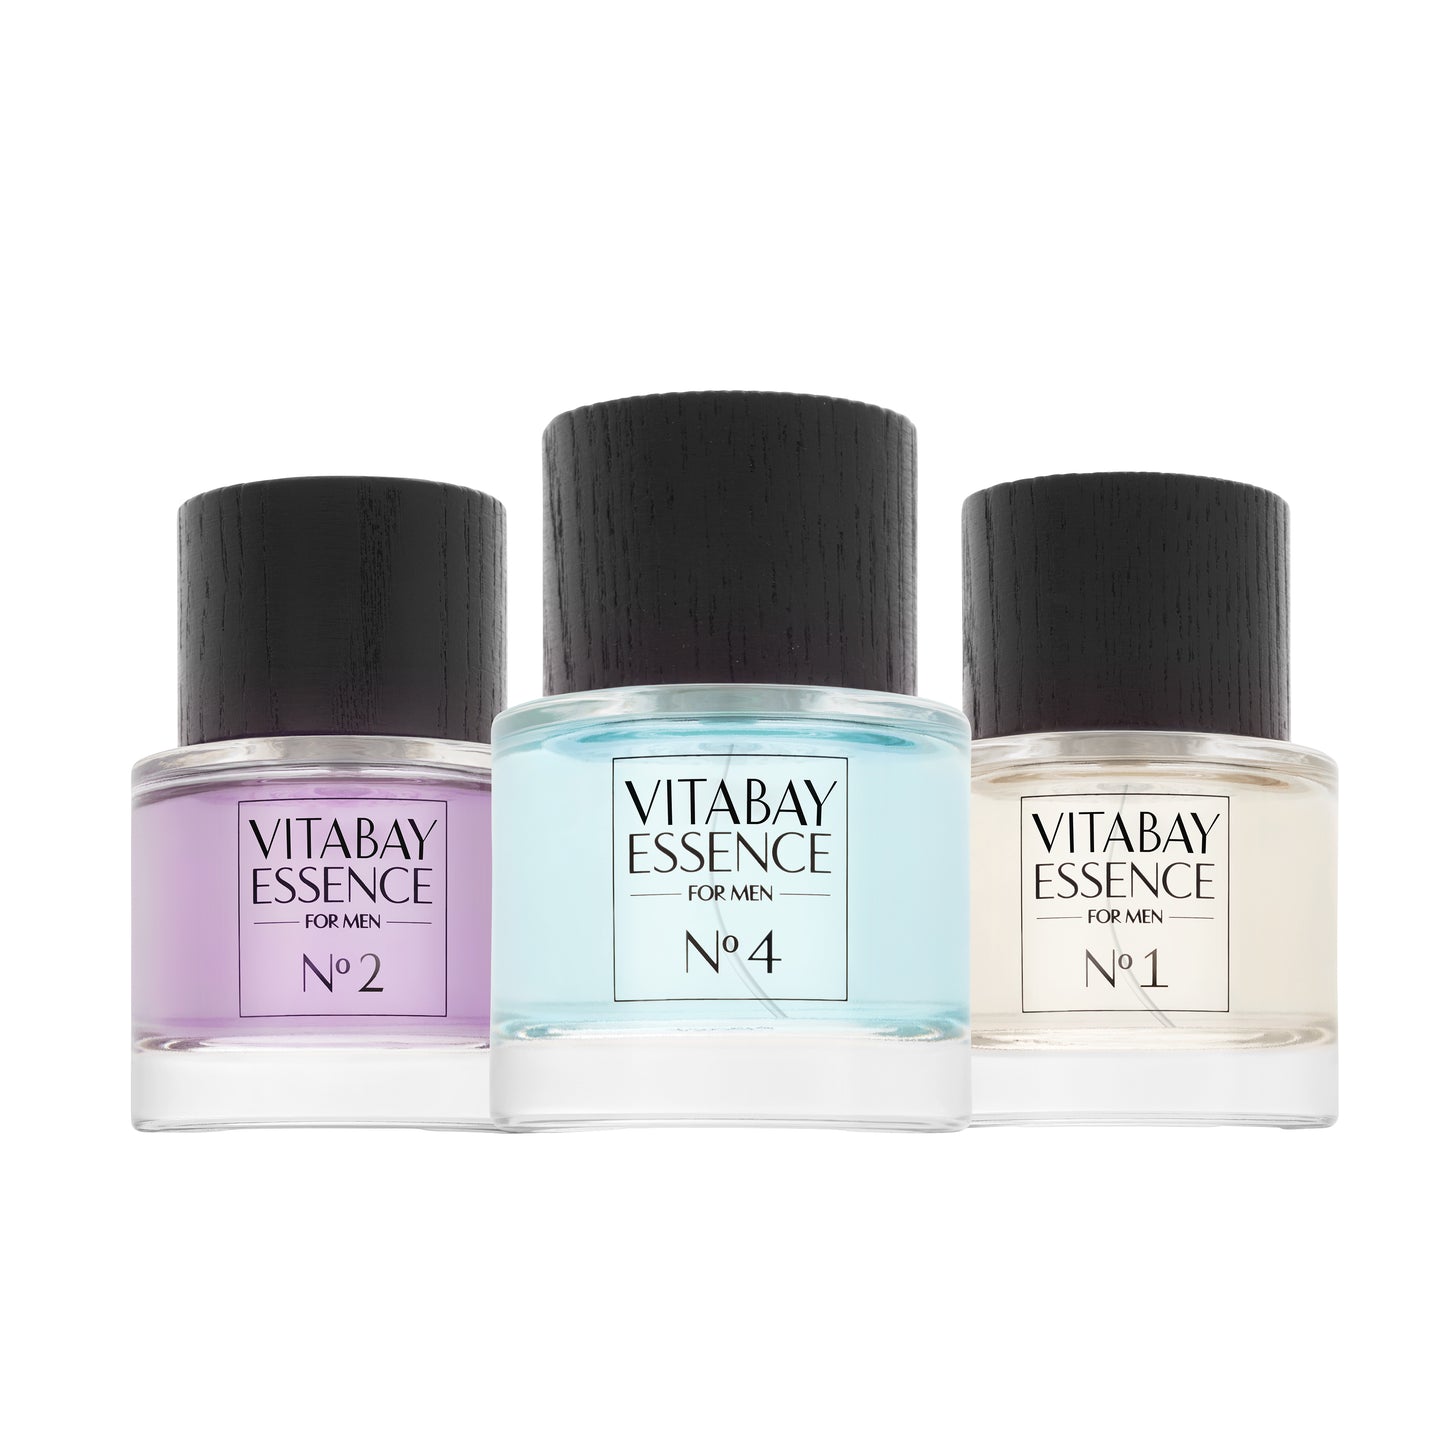 Vitabay Essence Fine Fragrance for Men No. 7 - 50 ml – Eau de Parfum 10% Parfümöl Vaporisateur / Spr